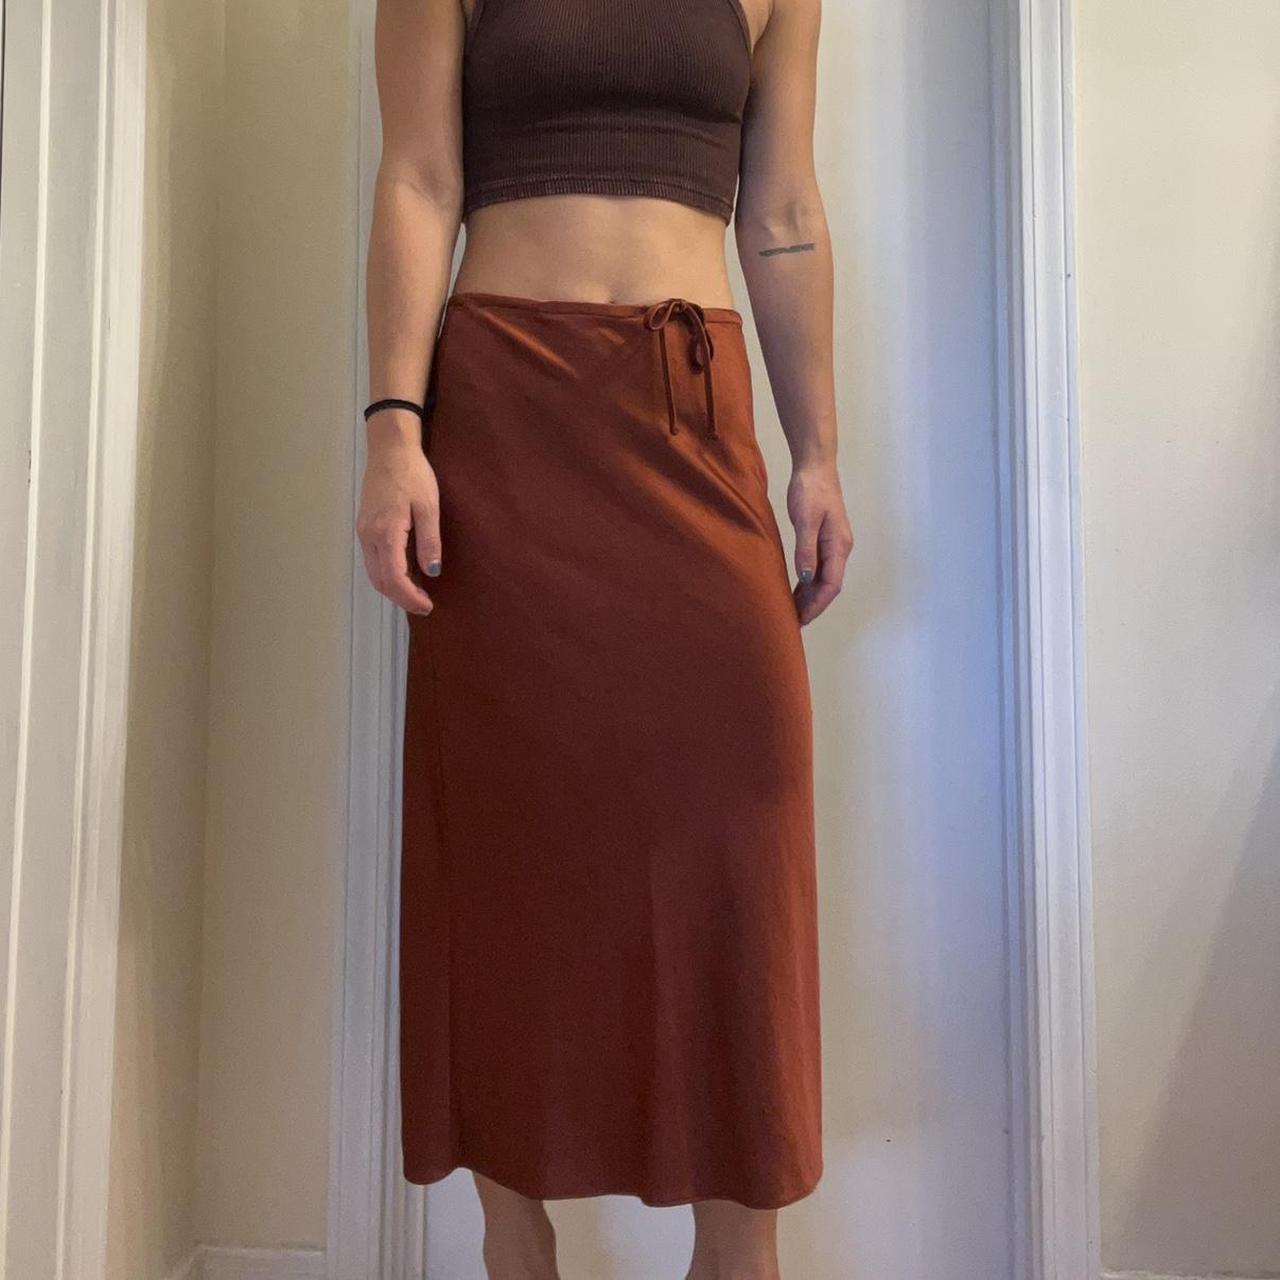 Madewell Women's Skirt